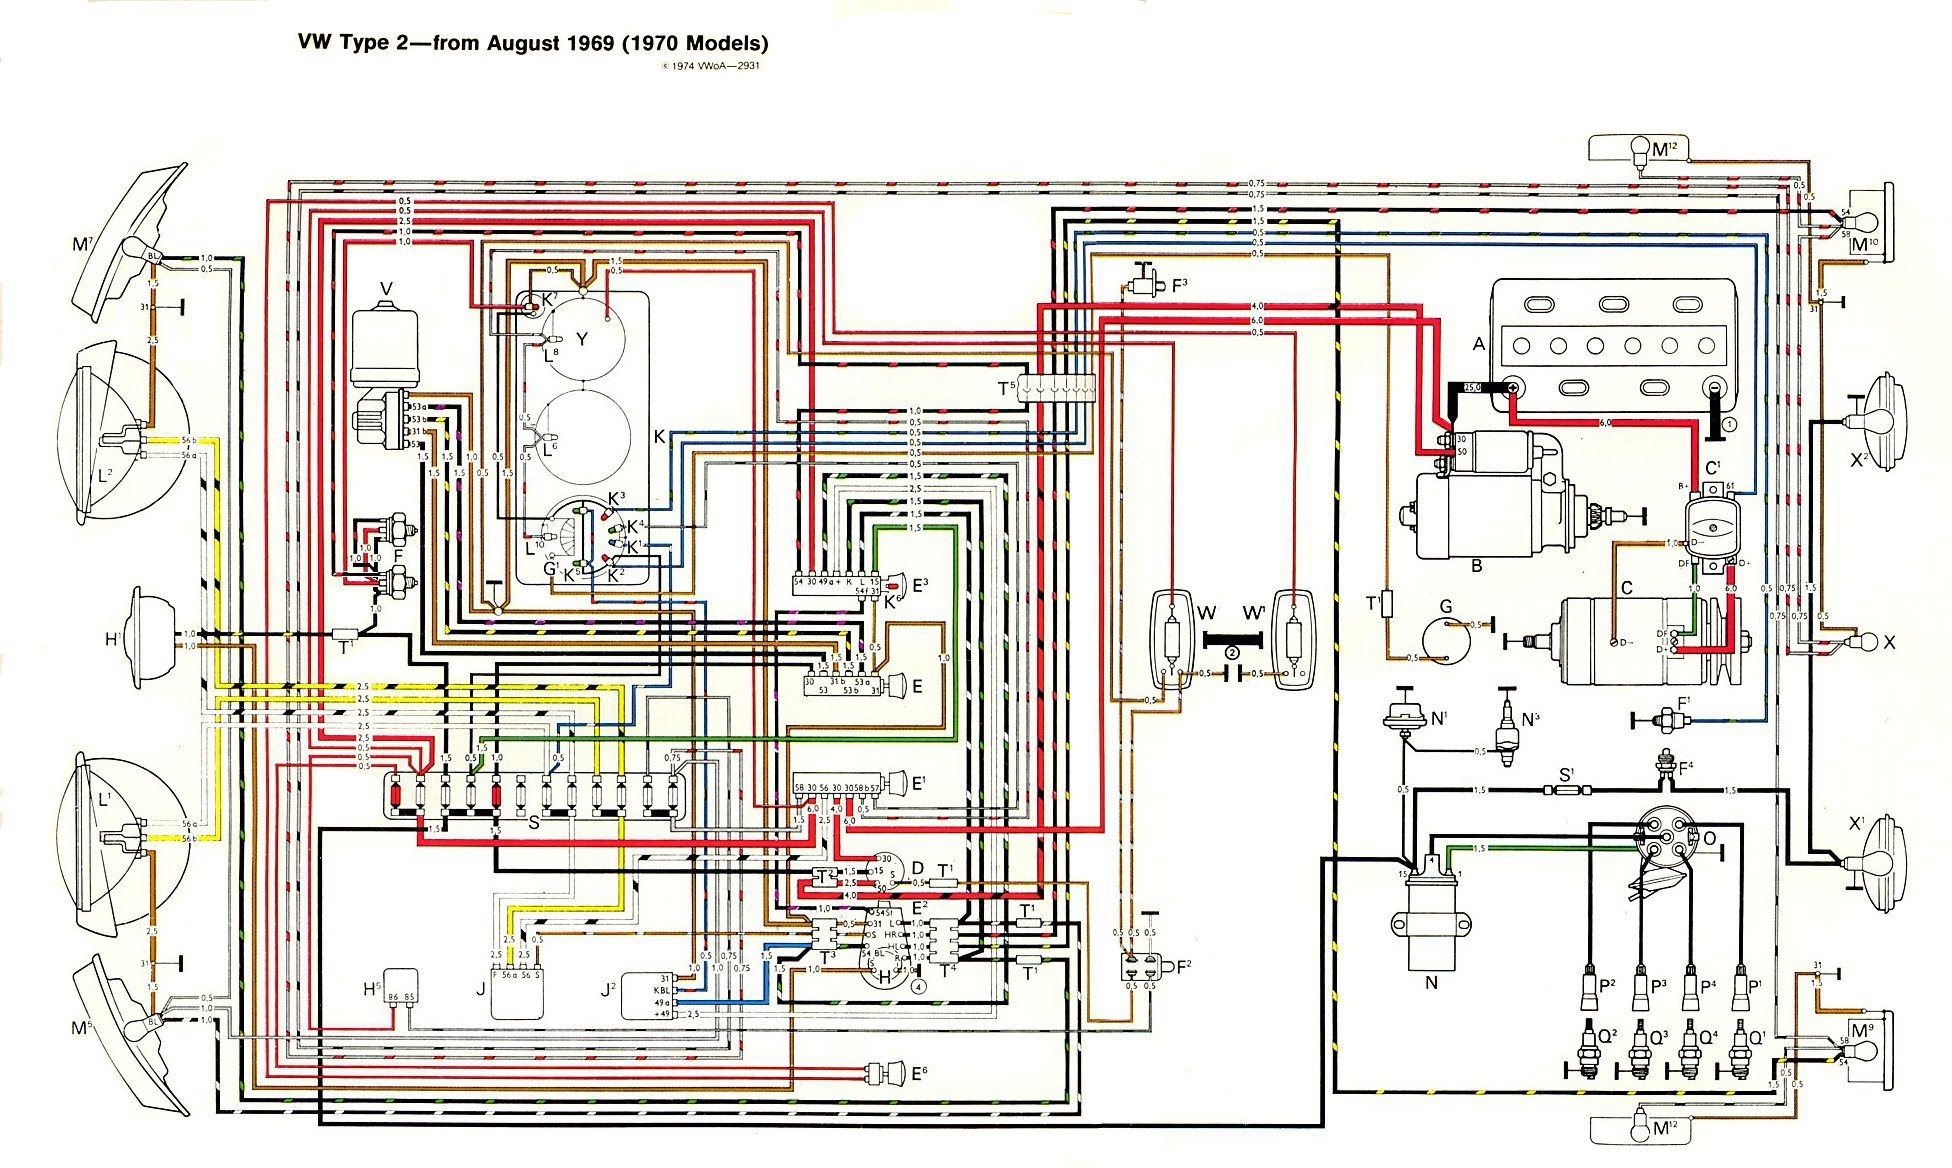 2012 Xto Bad Boy Stamatic Wiring Diagram 2c237f Bad Boy Buggies Wiring Diagram Of 2012 Xto Bad Boy Stamatic Wiring Diagram